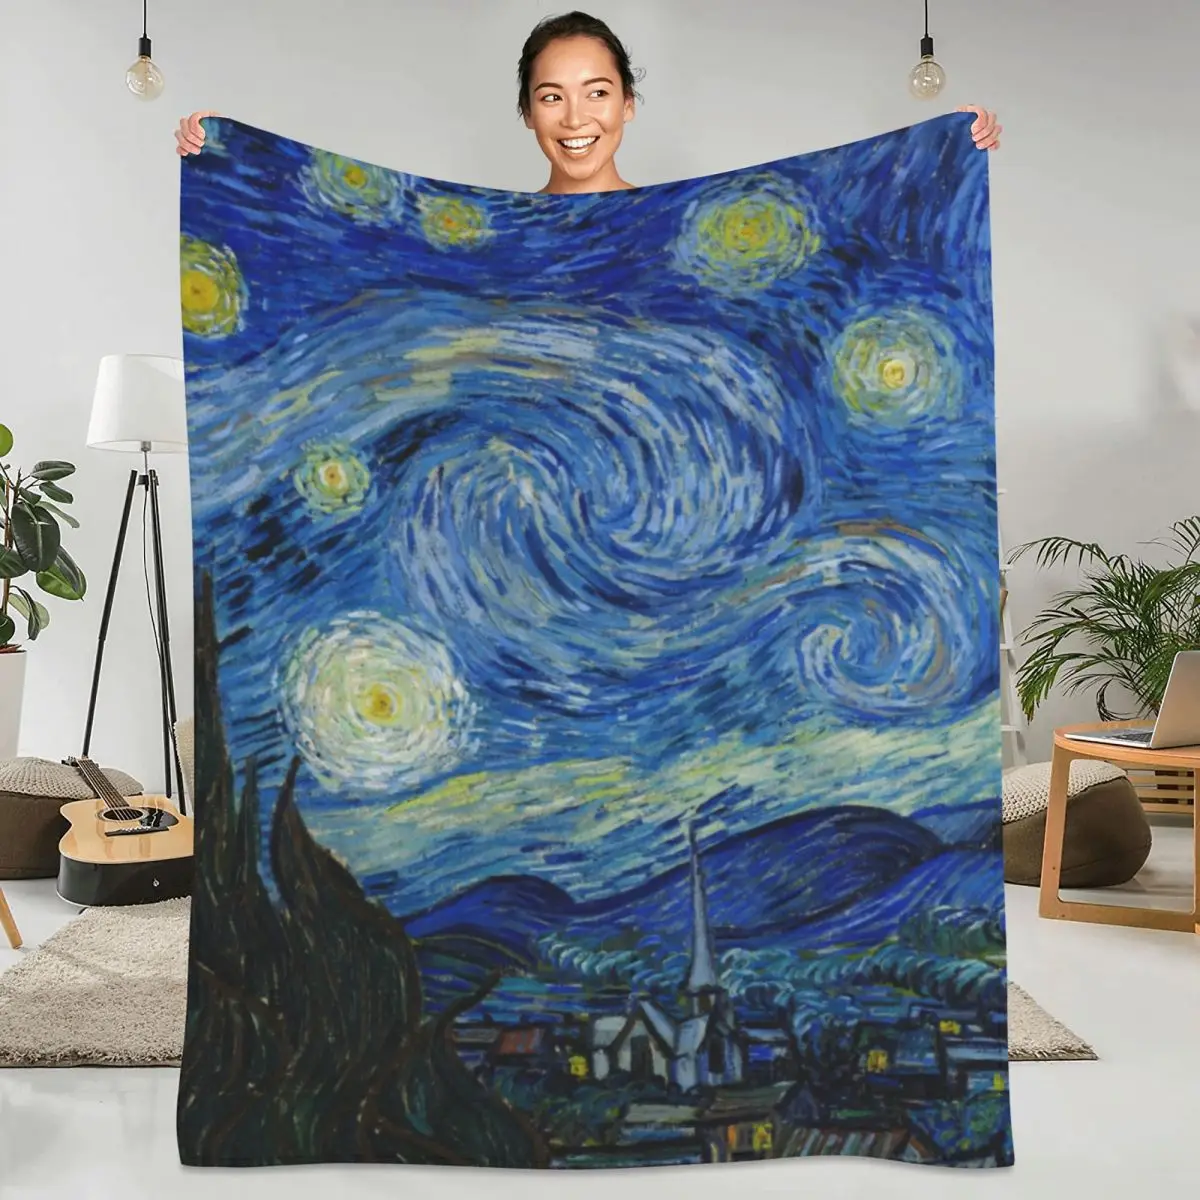 

Фланелевое Одеяло Star Van Gogh, мягкое прочное постельное белье со Звездной ночей и импрессионизмом, забавное покрывало для кемпинга, гостиной